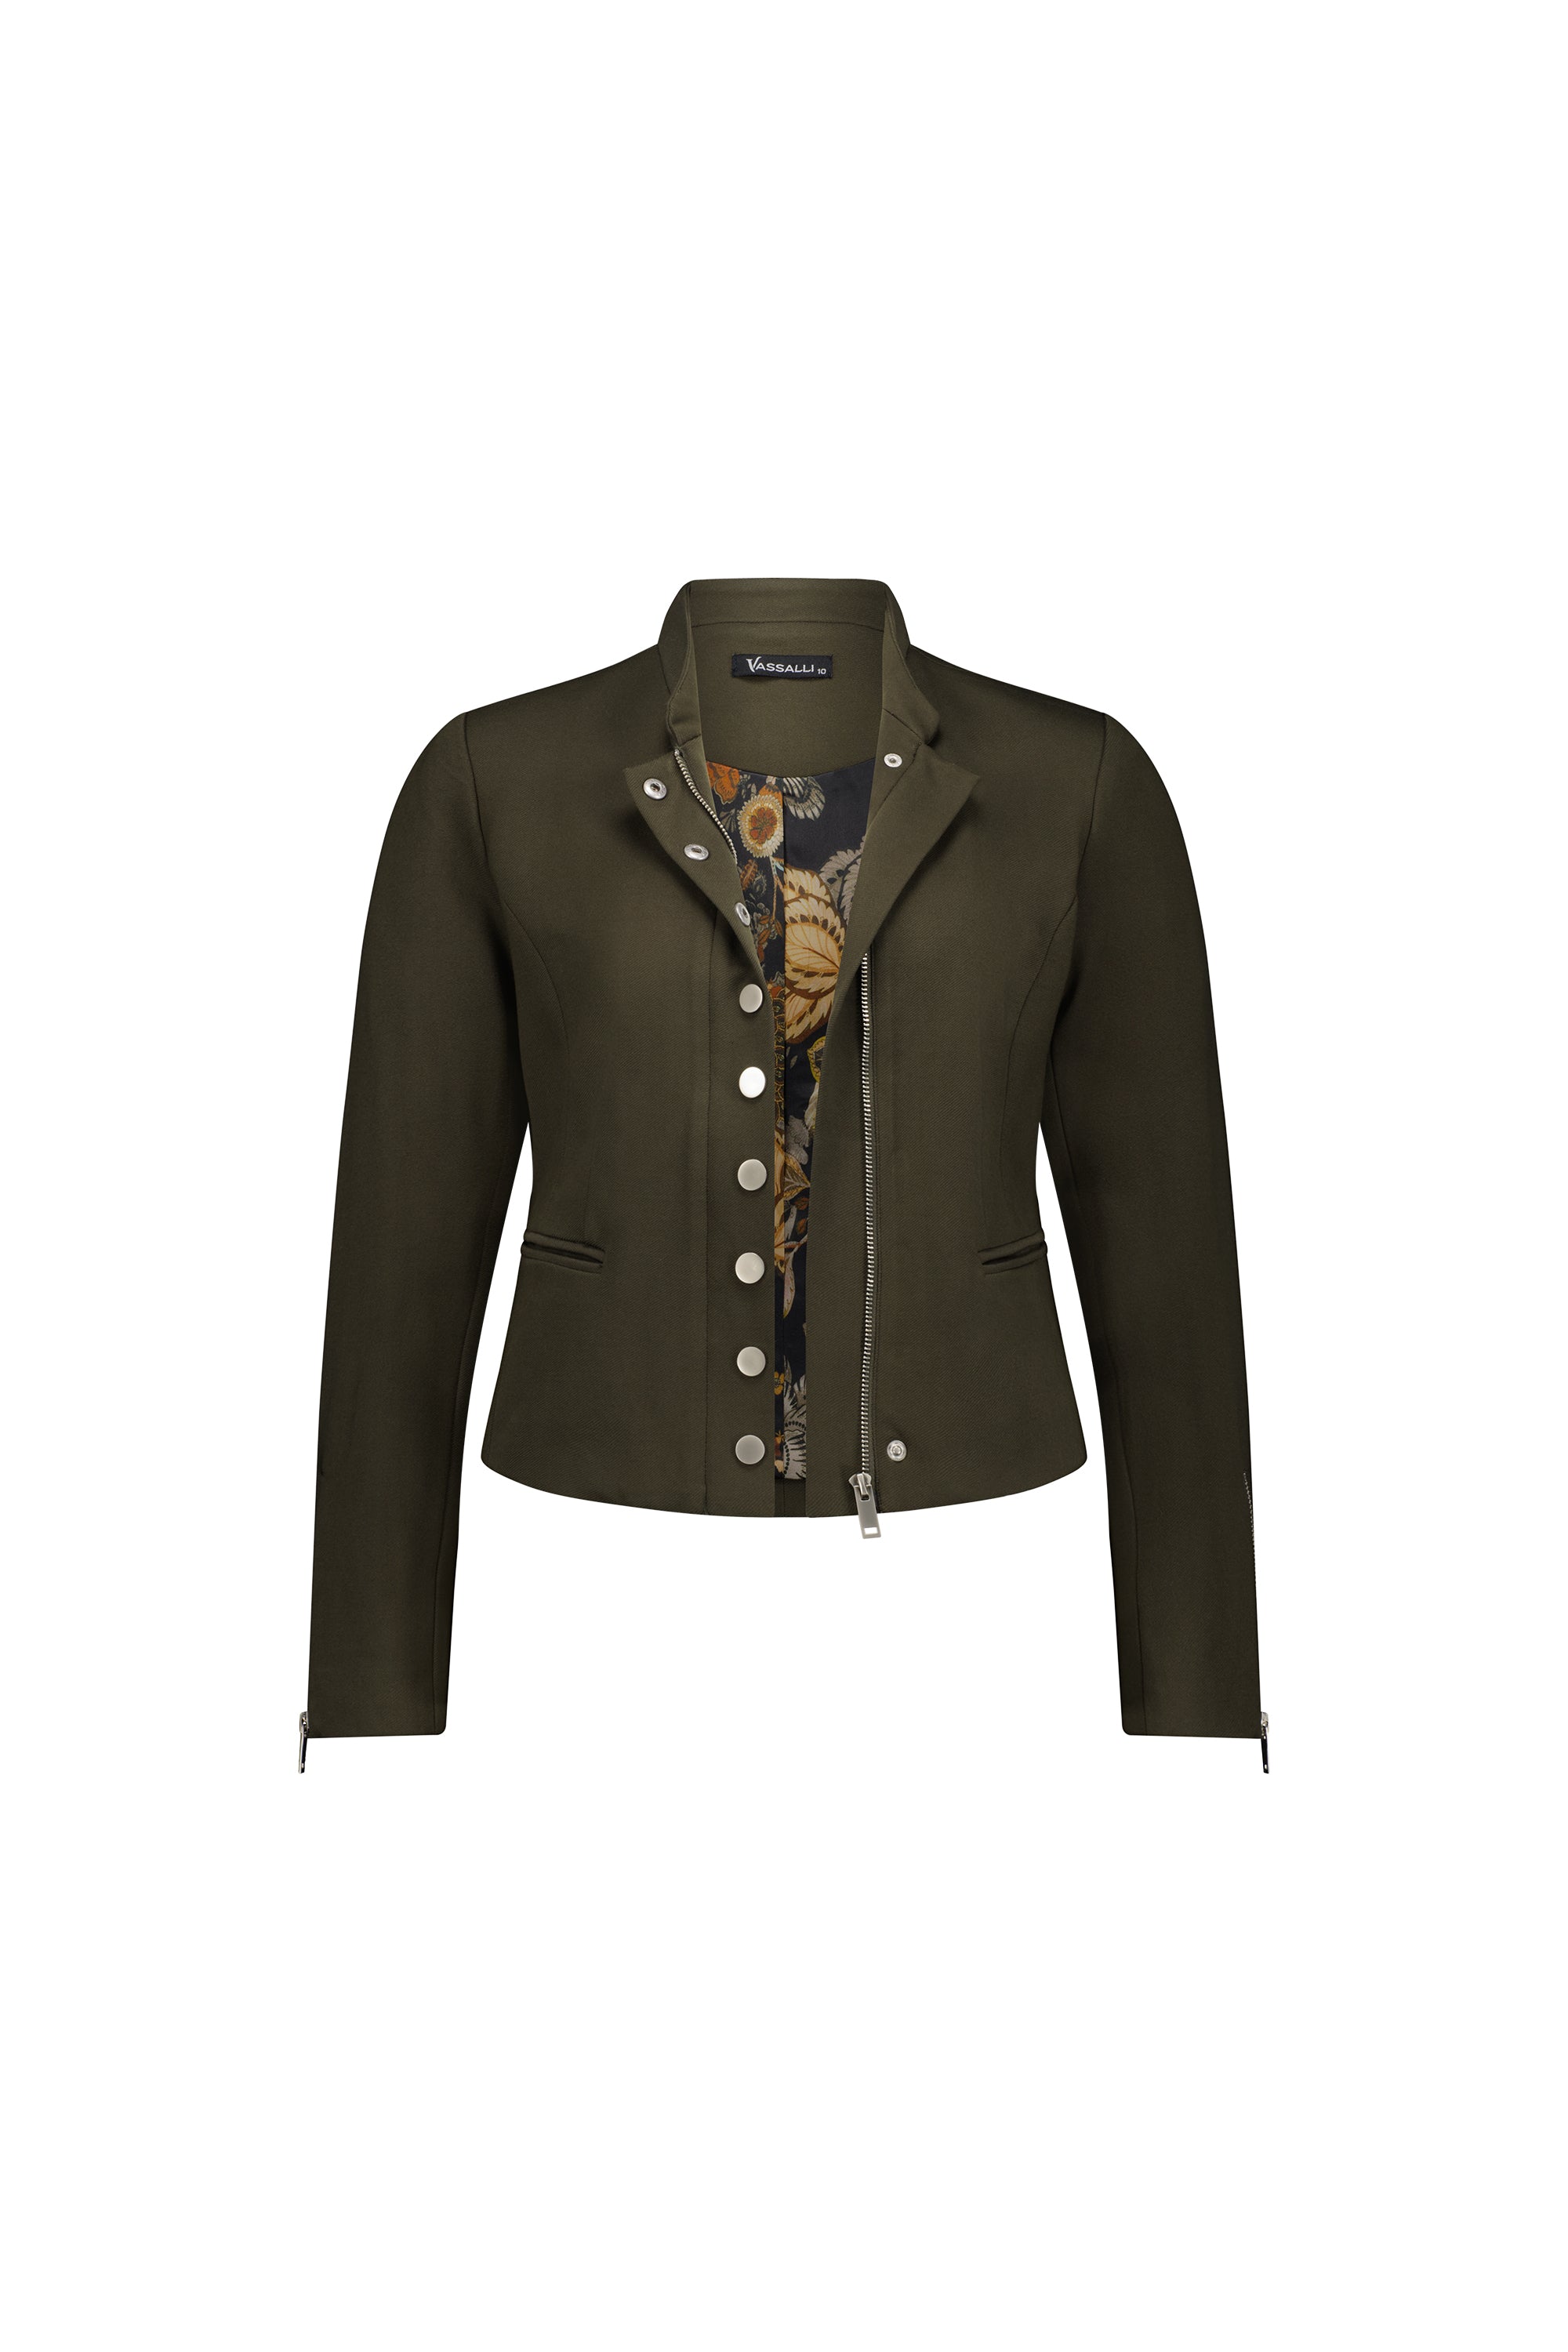 Vassalli Military Style Zip Up Jacket - Khaki